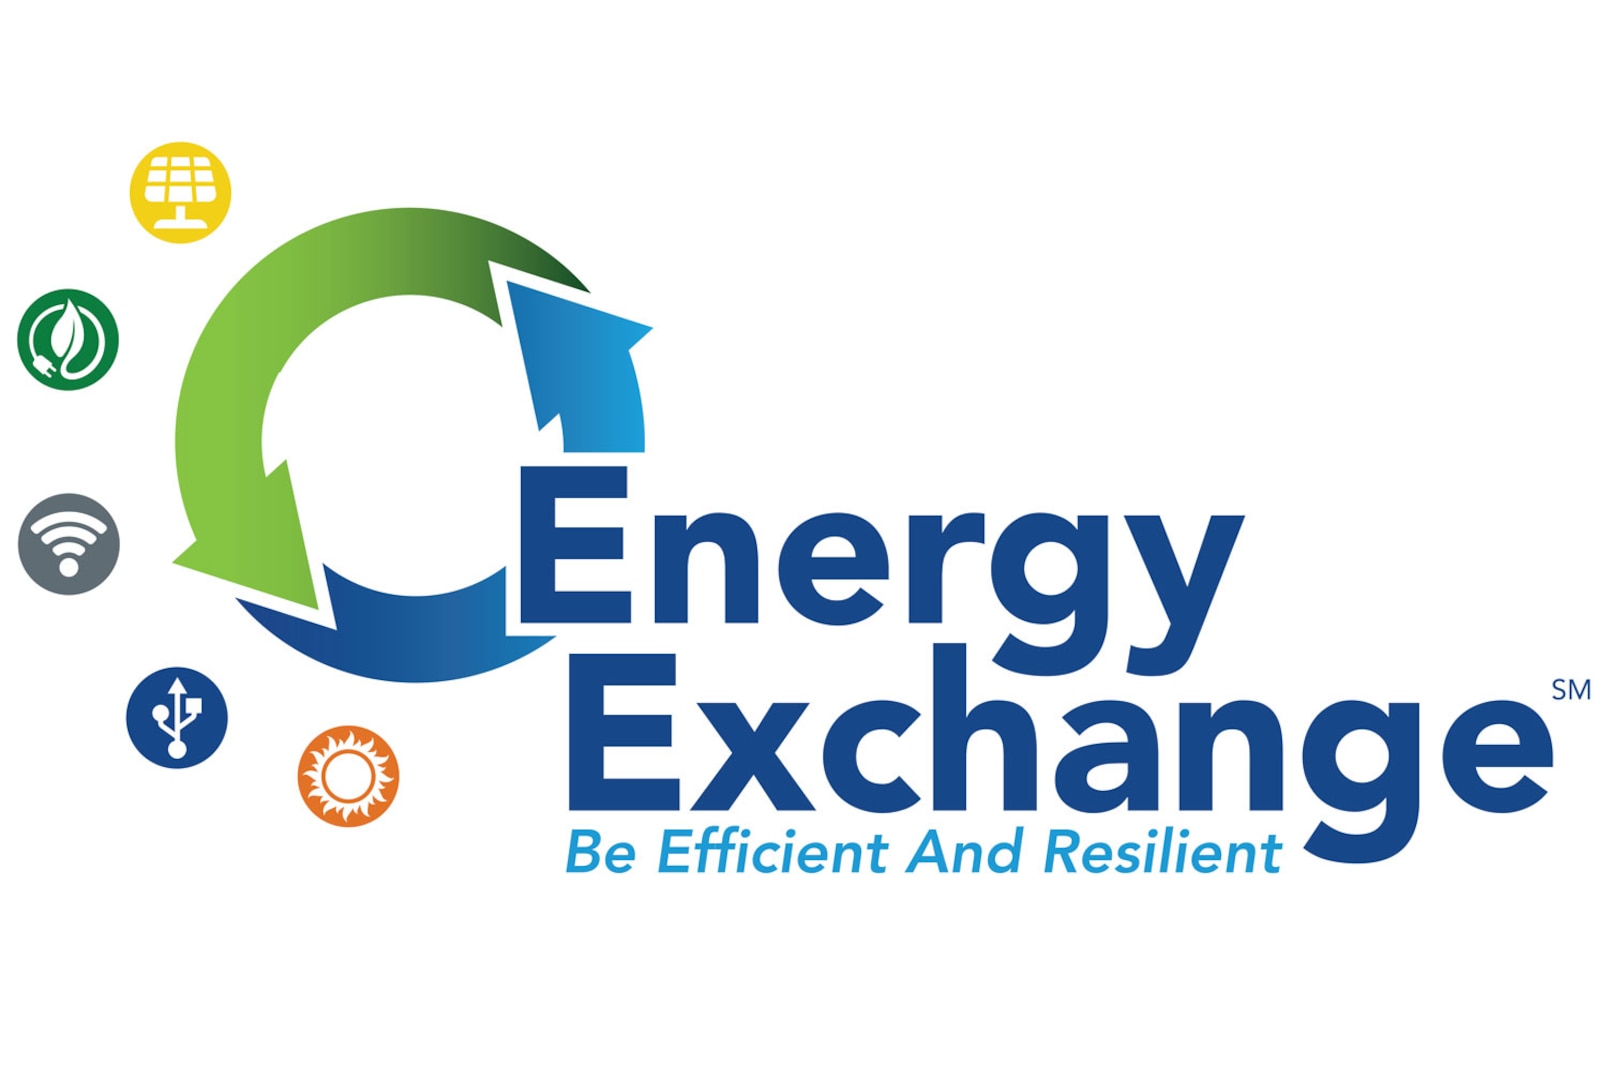 U.S. Department of Energy’s 2019 Energy Exchange logo